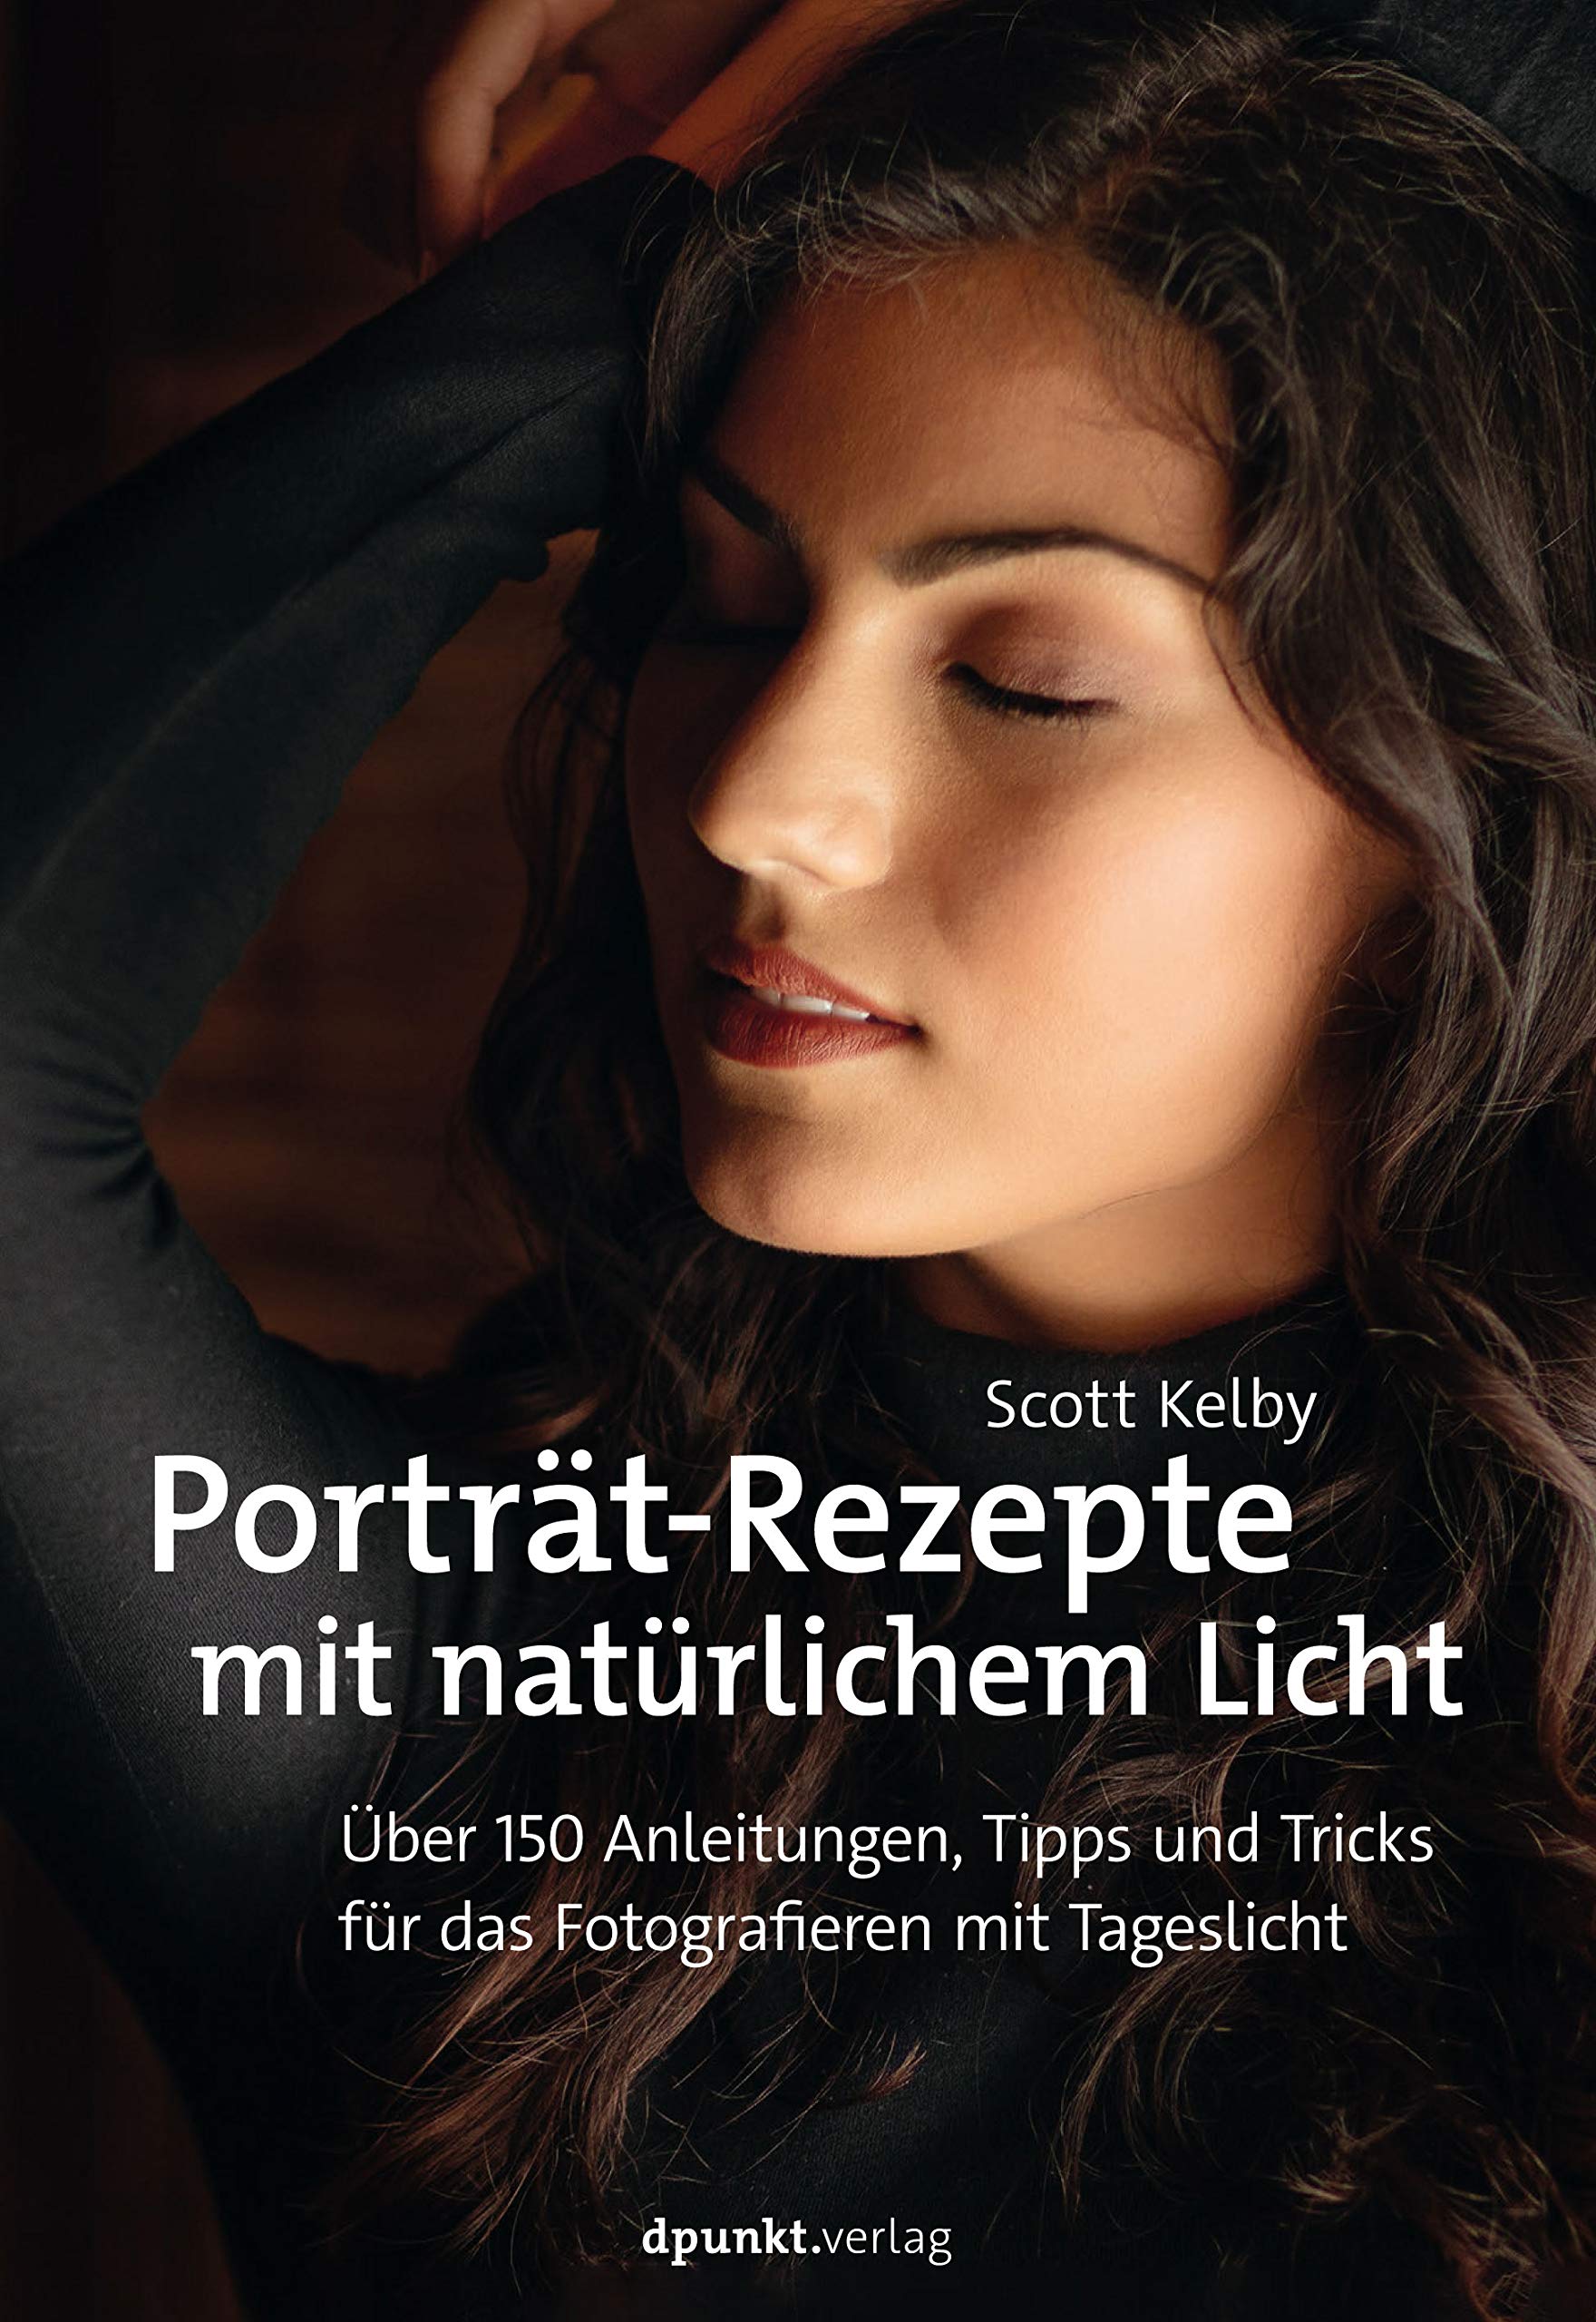 Porträt-Rezepte mit natürlichem Licht: Über 150 Anleitungen, Tipps und Tricks für das Fotografieren mit Tageslicht von Scott Kelby